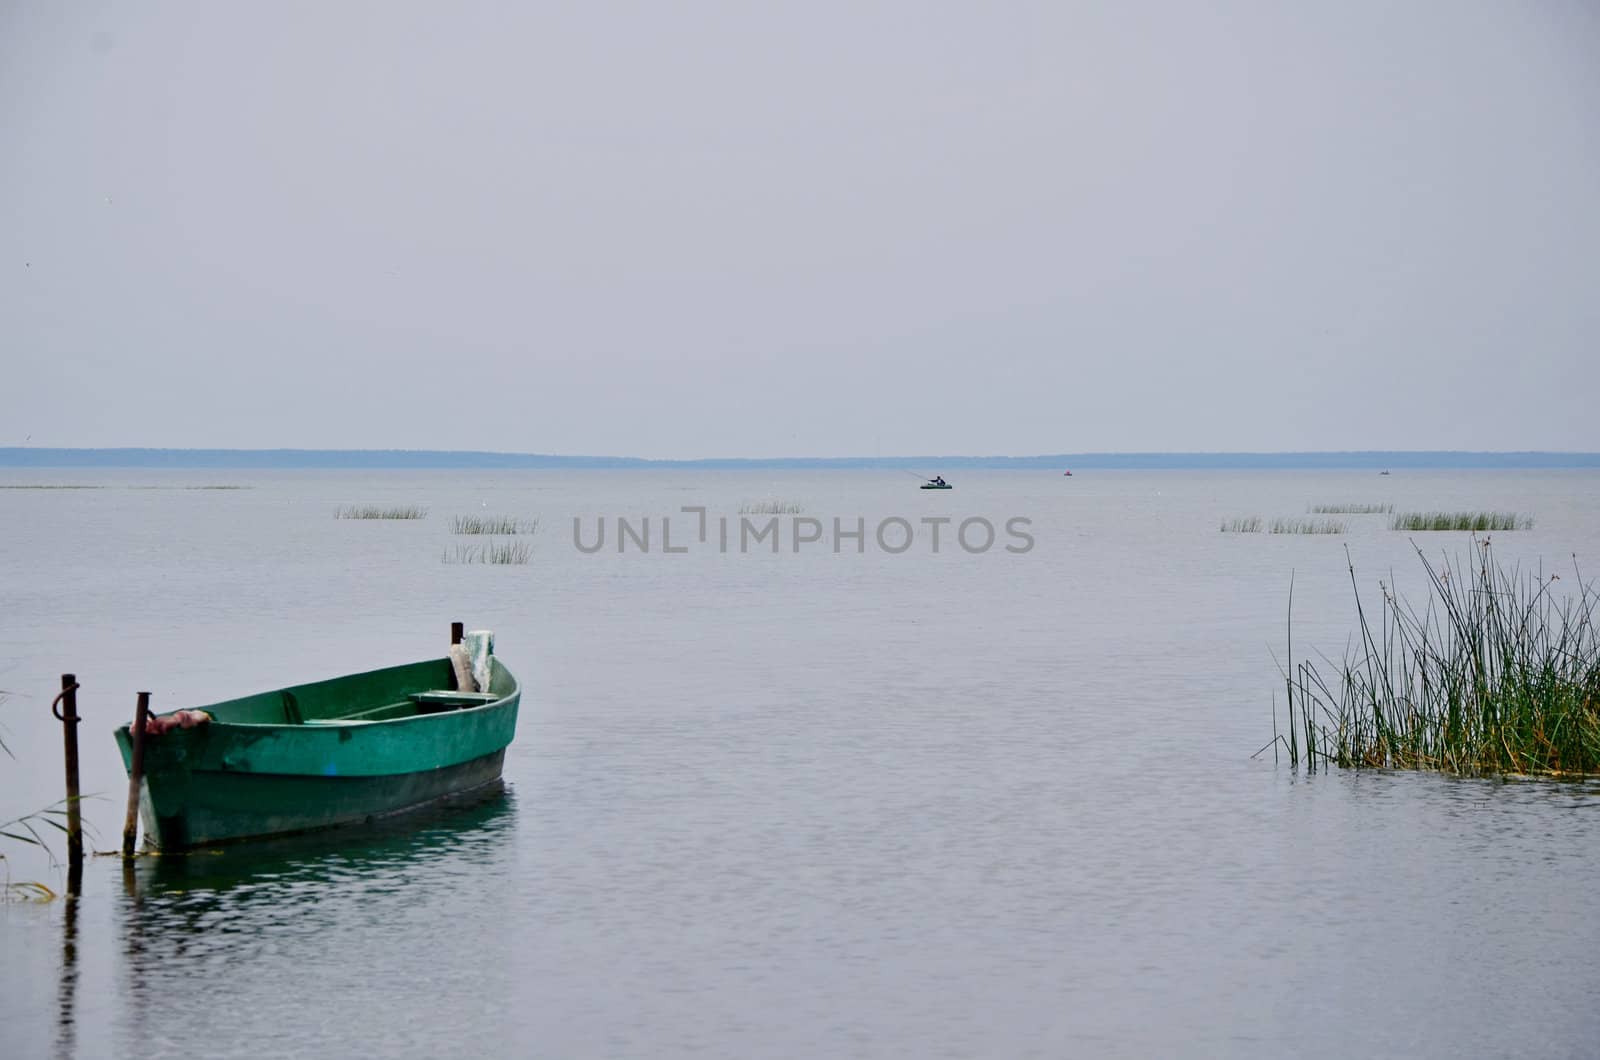 On lake coast Pleshcheeva by Netti